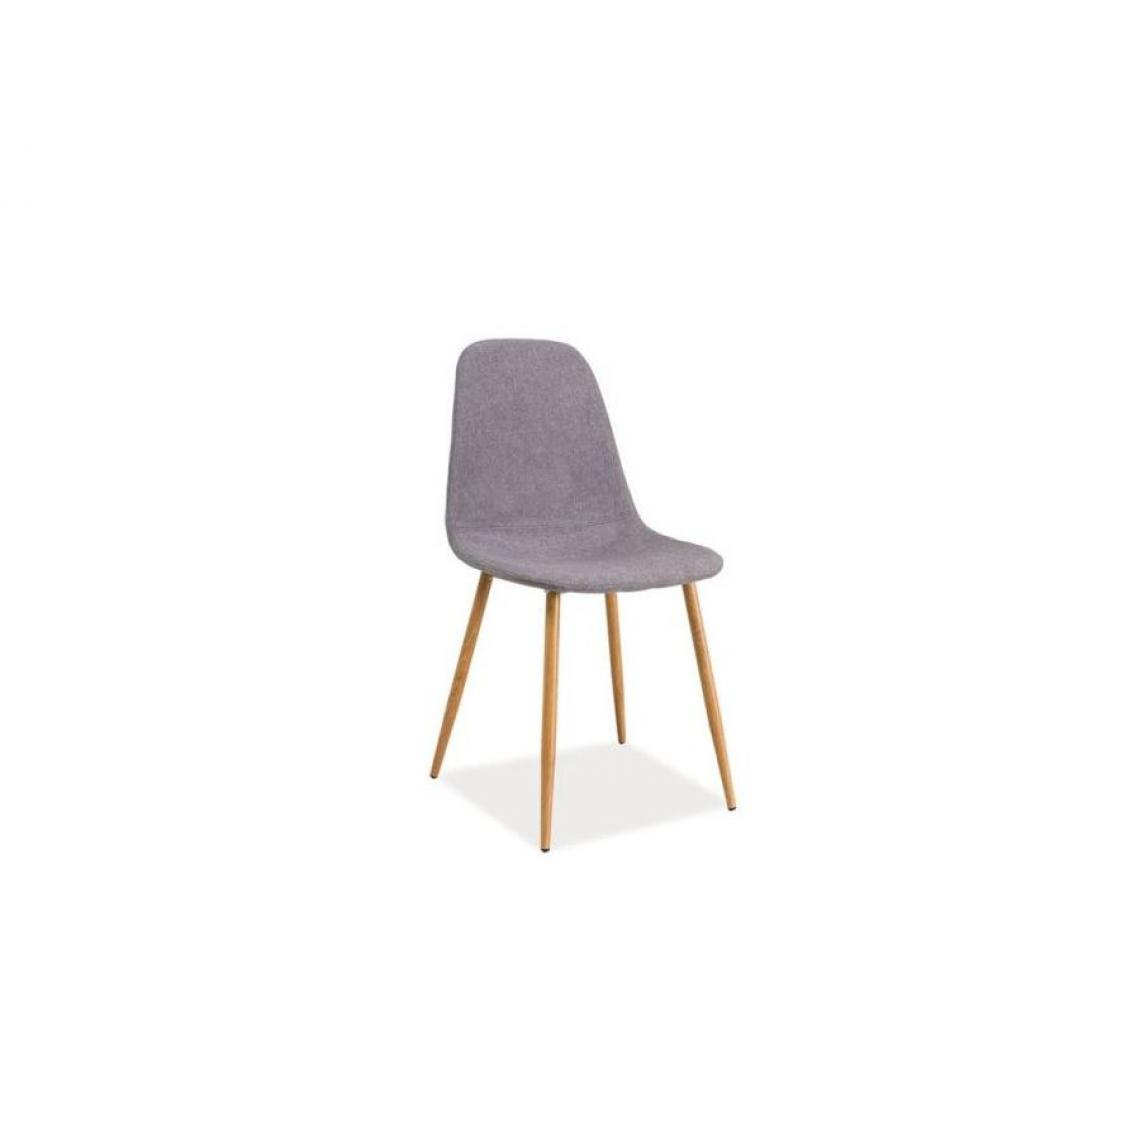 Hucoco - FRANZI | Chaise de style scandinave avec base en métal | Salle à mager Salon Bureau | 86x44x39 cm | Tissu haute qualité - Gris - Chaises